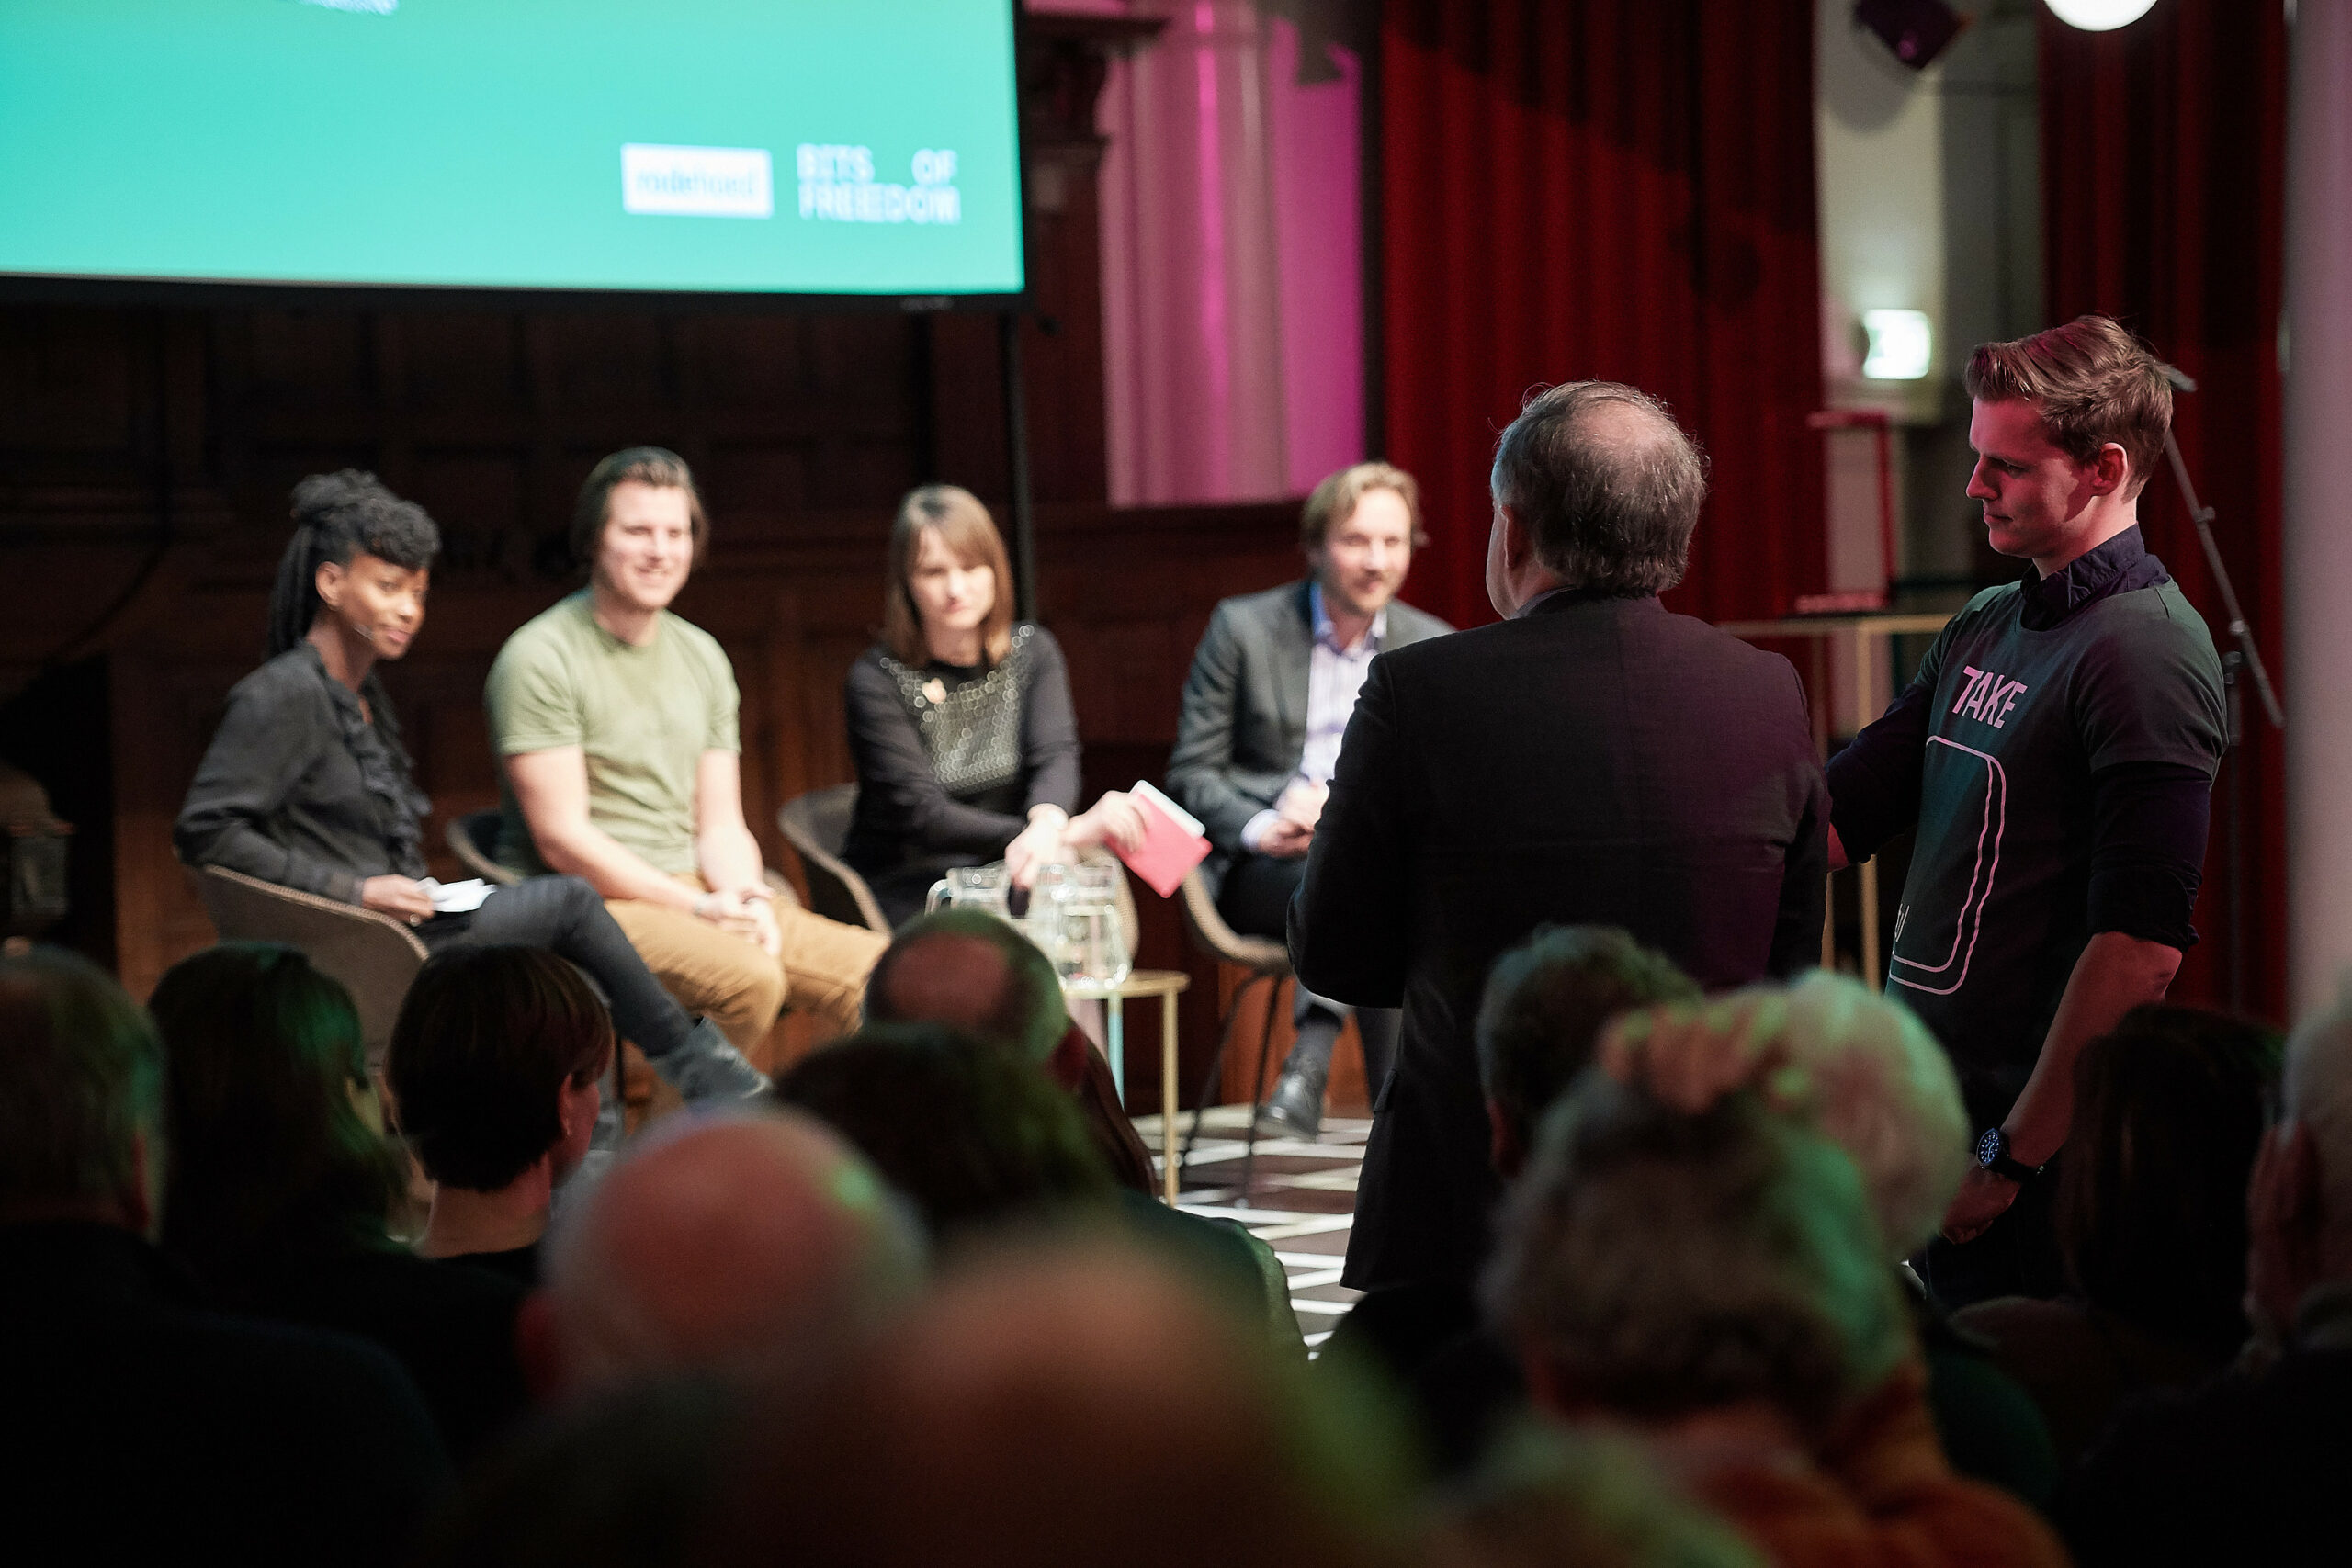 Monique Steijns, Joost Plattel, Linda Vermeulen en Hans de Zwart. Foto: Jeroen Mooijman (CC BY-NC-ND 4.0)